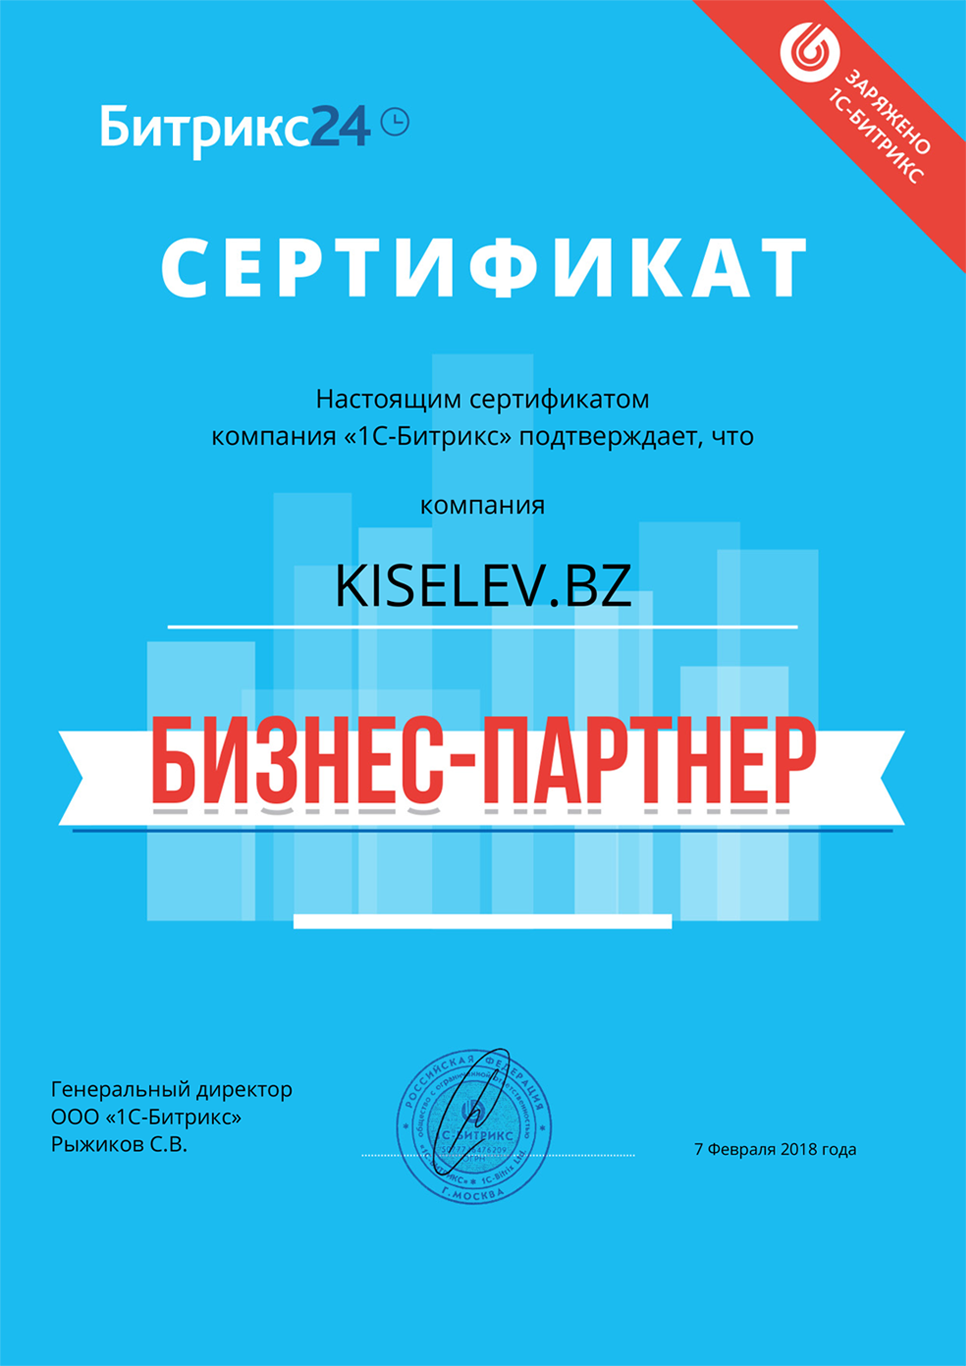 Сертификат партнёра по АМОСРМ в Покрове